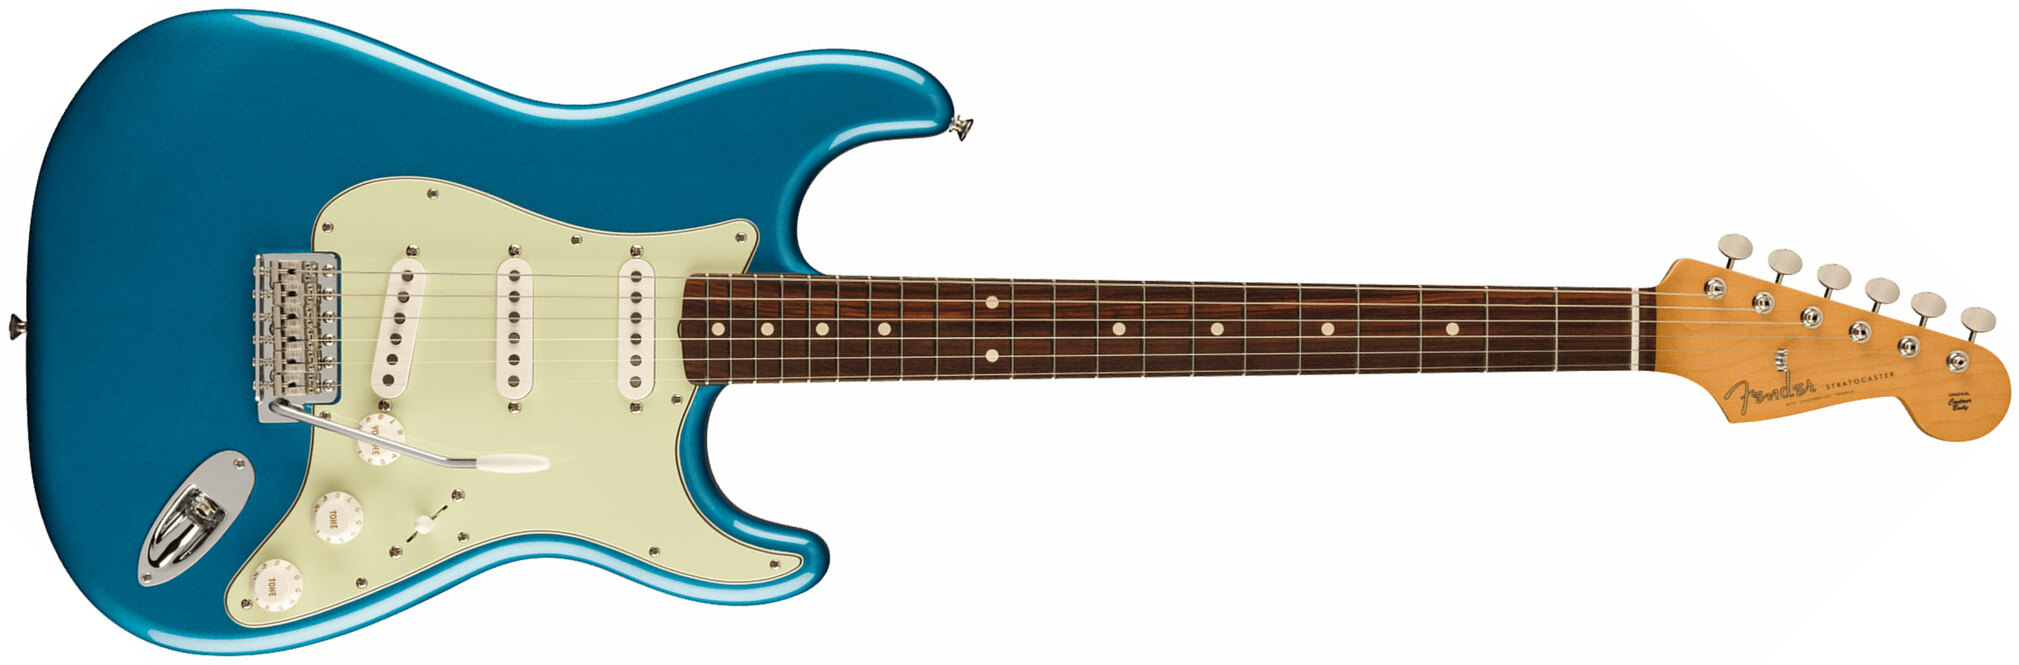 Fender Strat 60s Vintera 2 Mex 3s Trem Rw - Lake Placid Blue - Guitarra eléctrica con forma de str. - Main picture